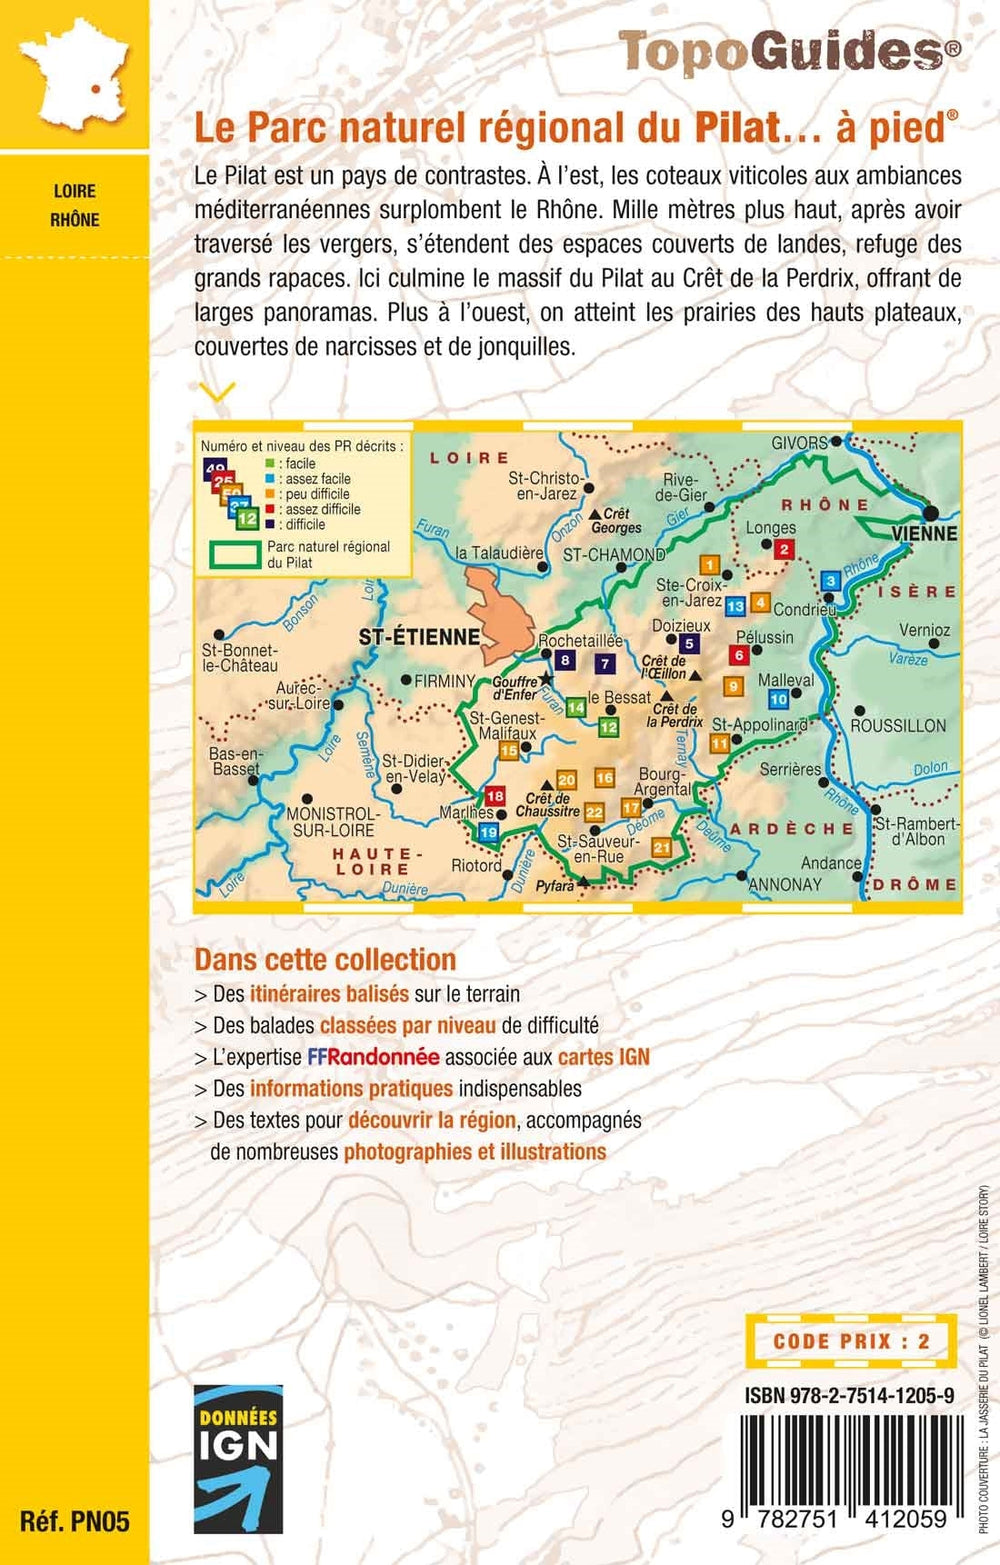 Topoguide de randonnée - Le Parc naturel régional du Pilat à pied | FFR guide de randonnée FFR - Fédération Française de Randonnée 